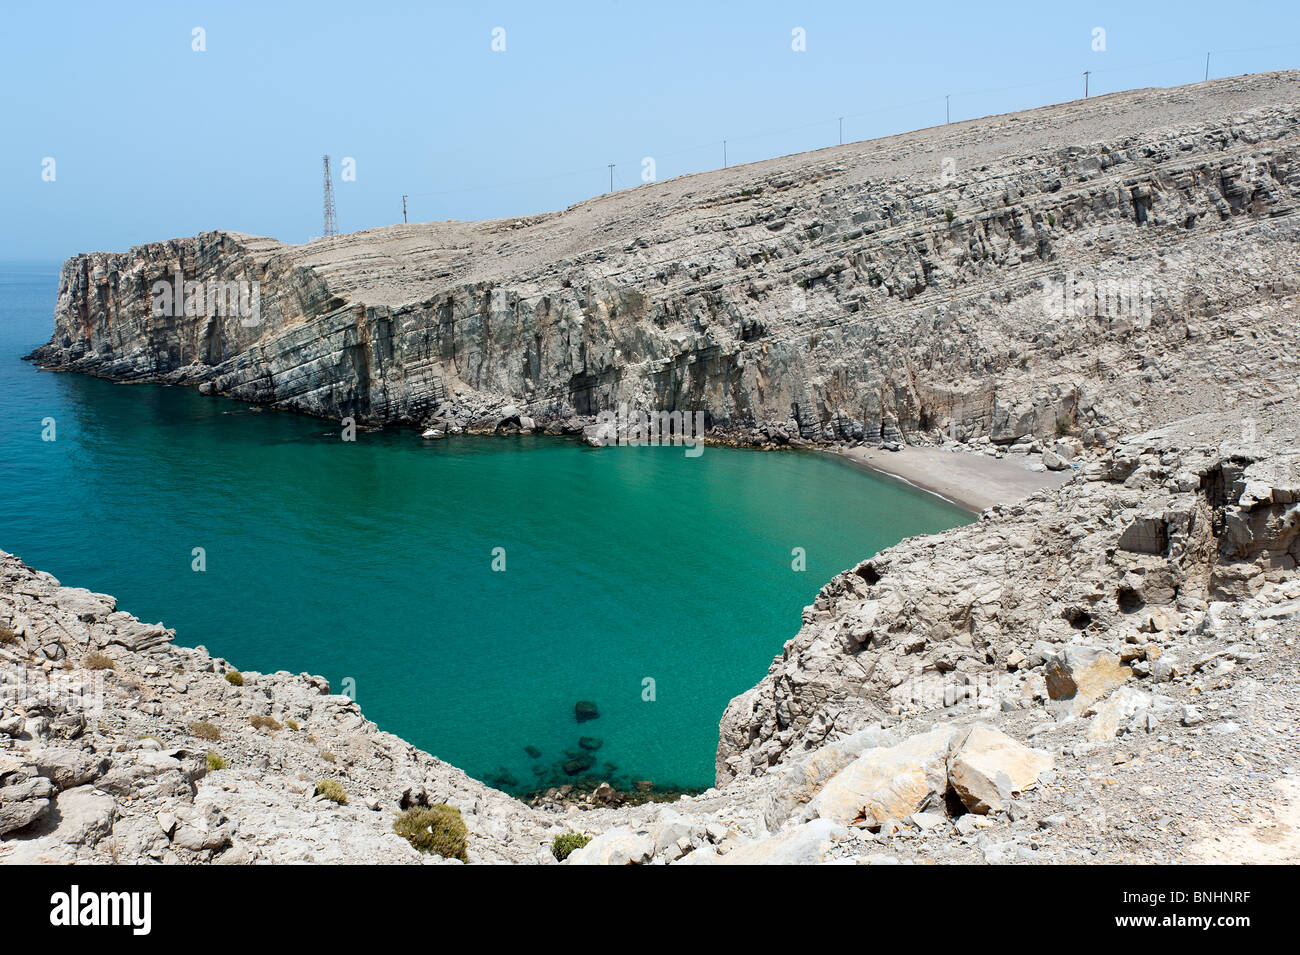 Rocky cove on the Musandam peninsula, Oman Stock Photo